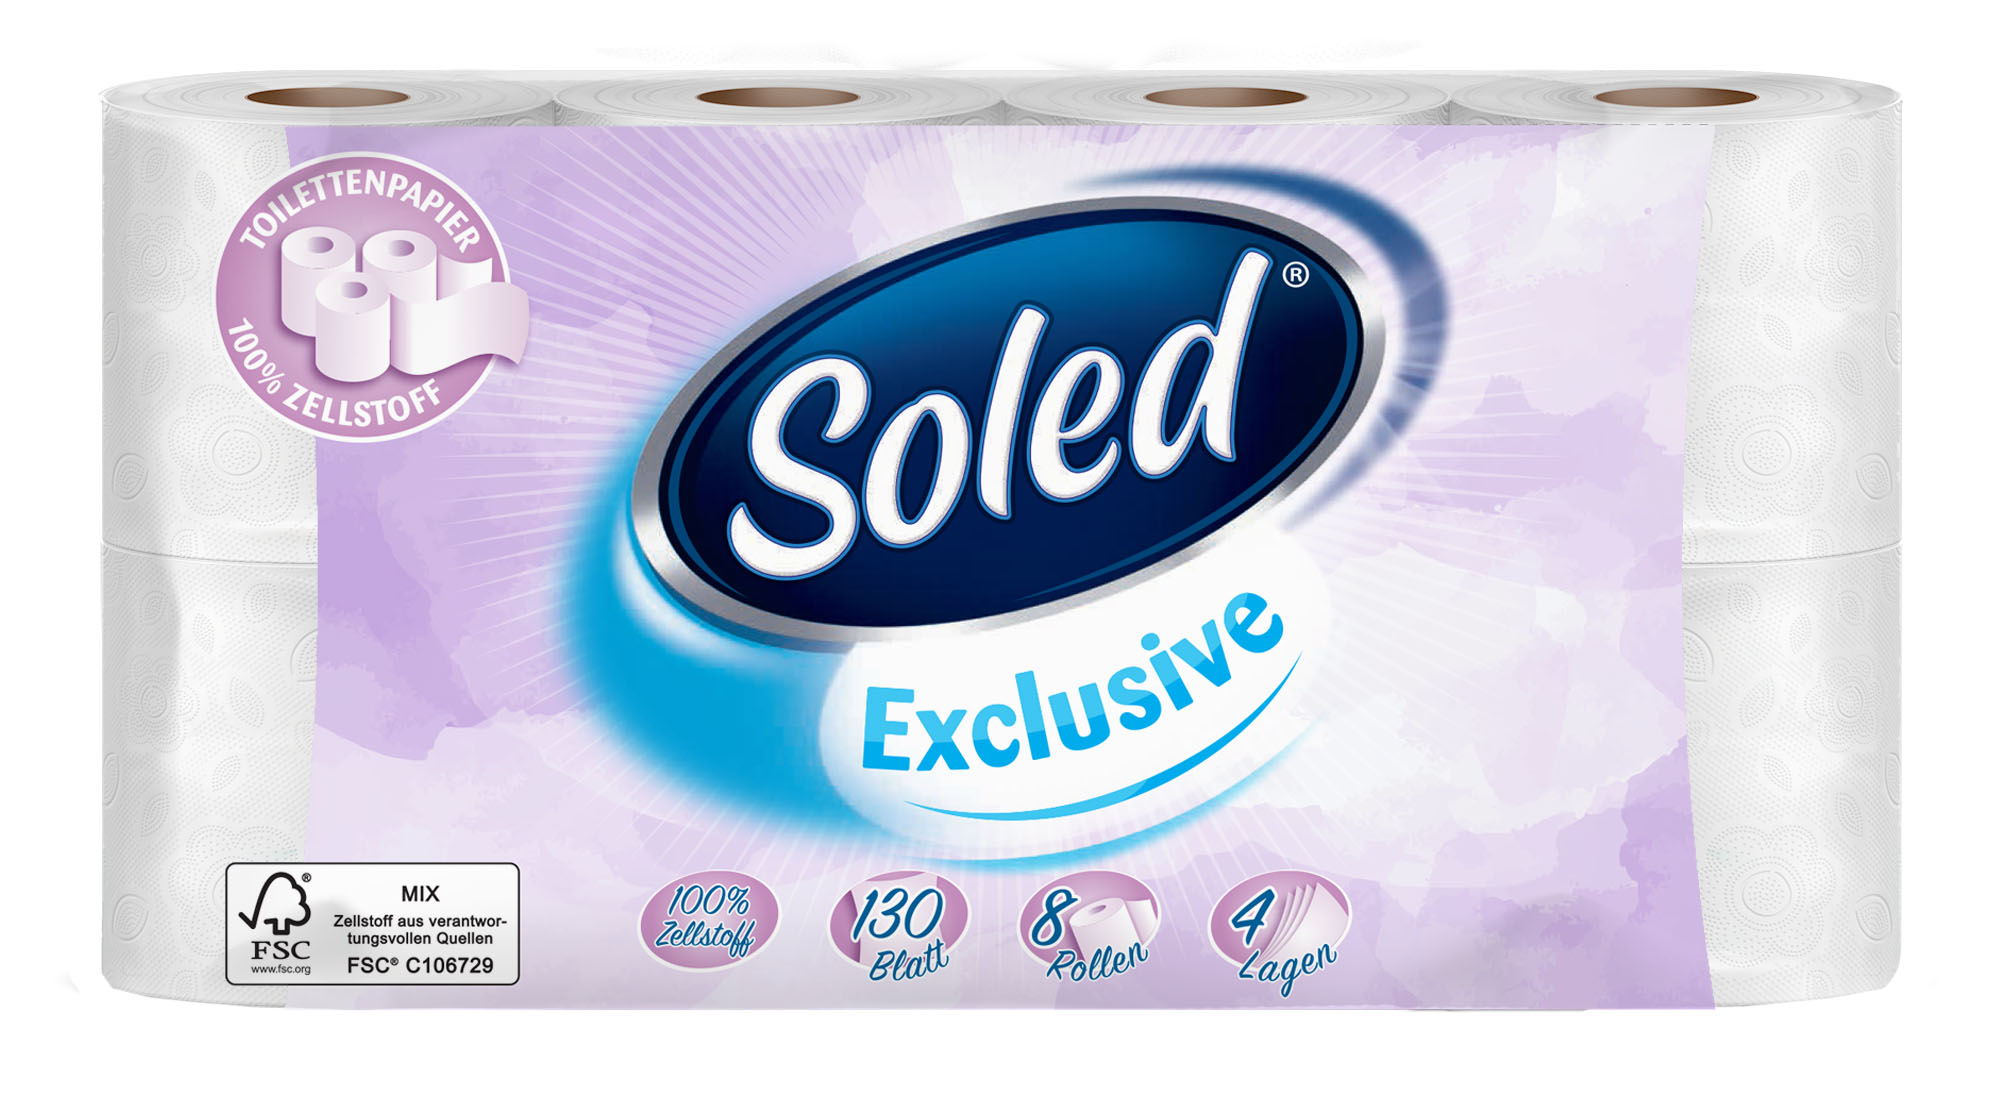 10698 - Soled Exclusiv Toilettenpapier, 8x130 Blatt, 4-lagig